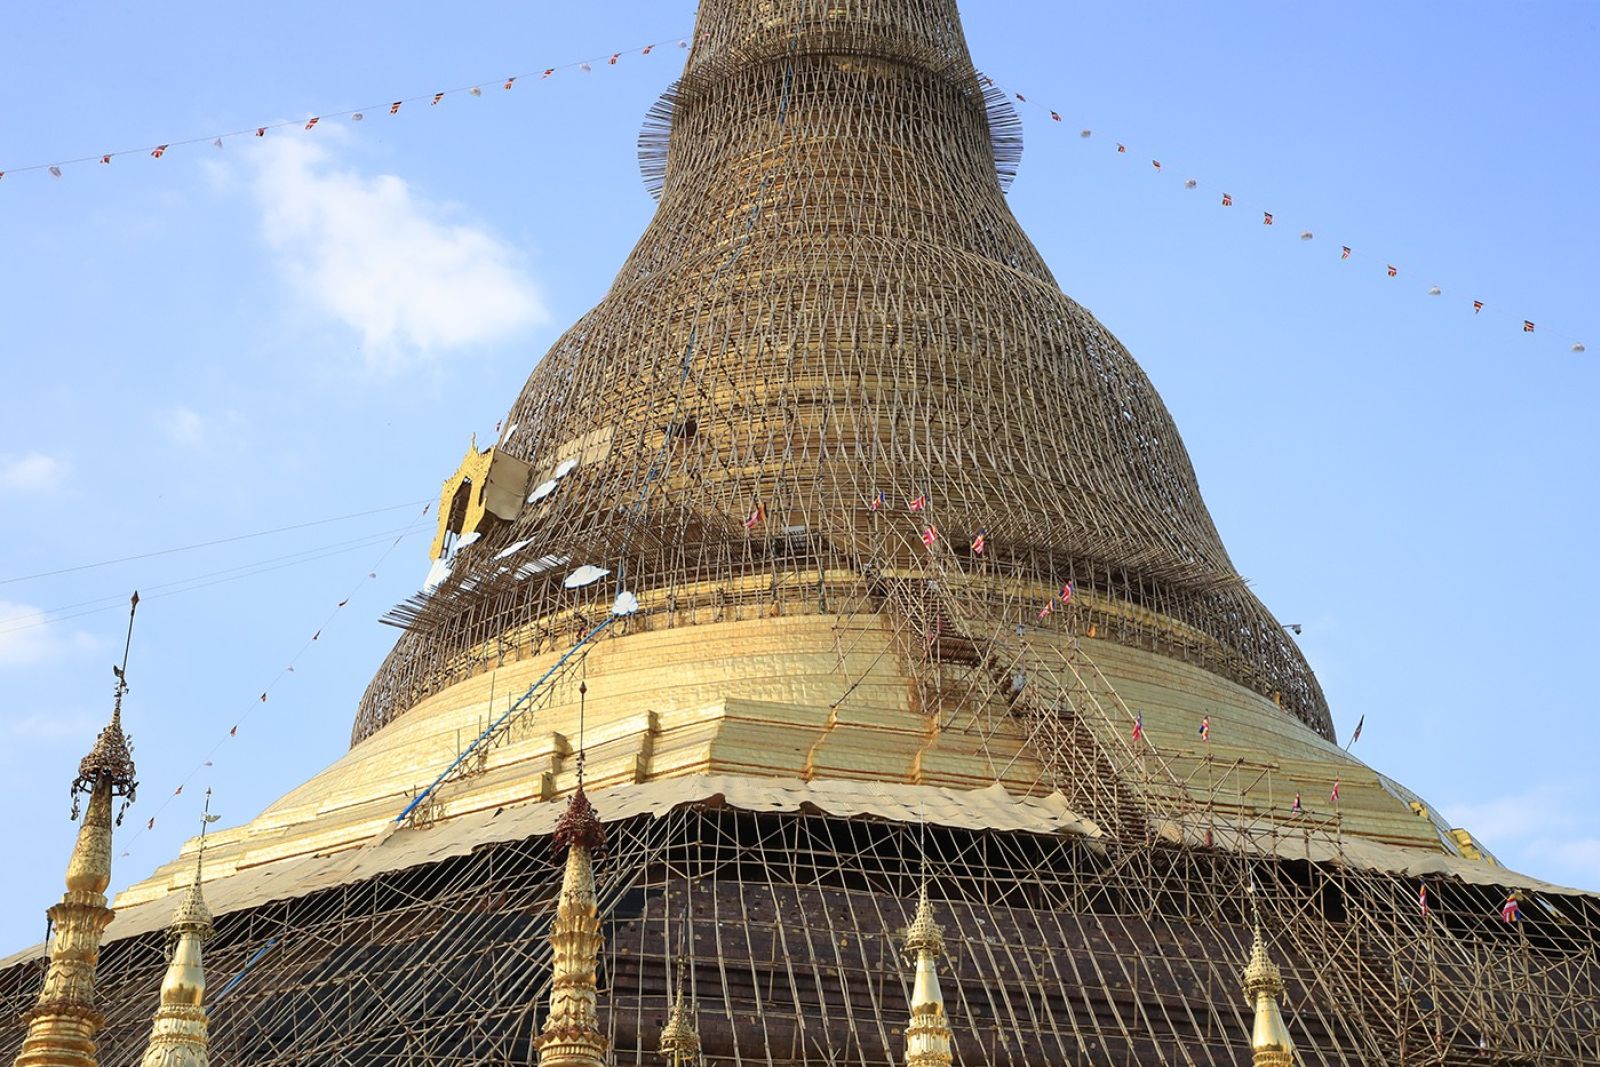 Shwedagon-Pagode in Yangon